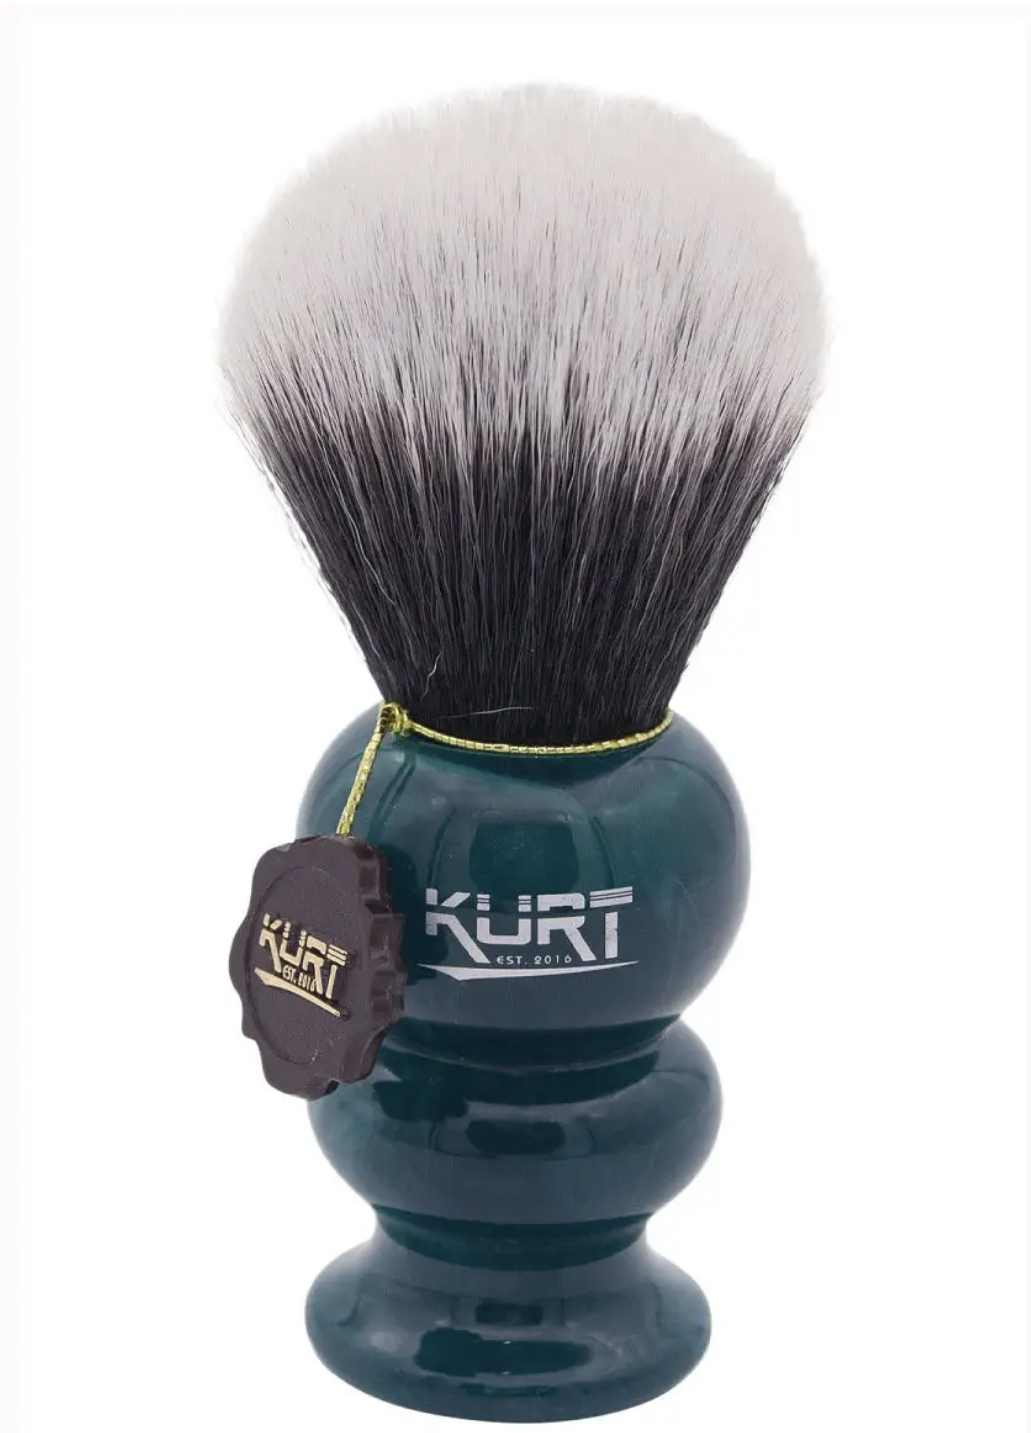   / Kurt -      Hi-Brush K_10027S -  1 